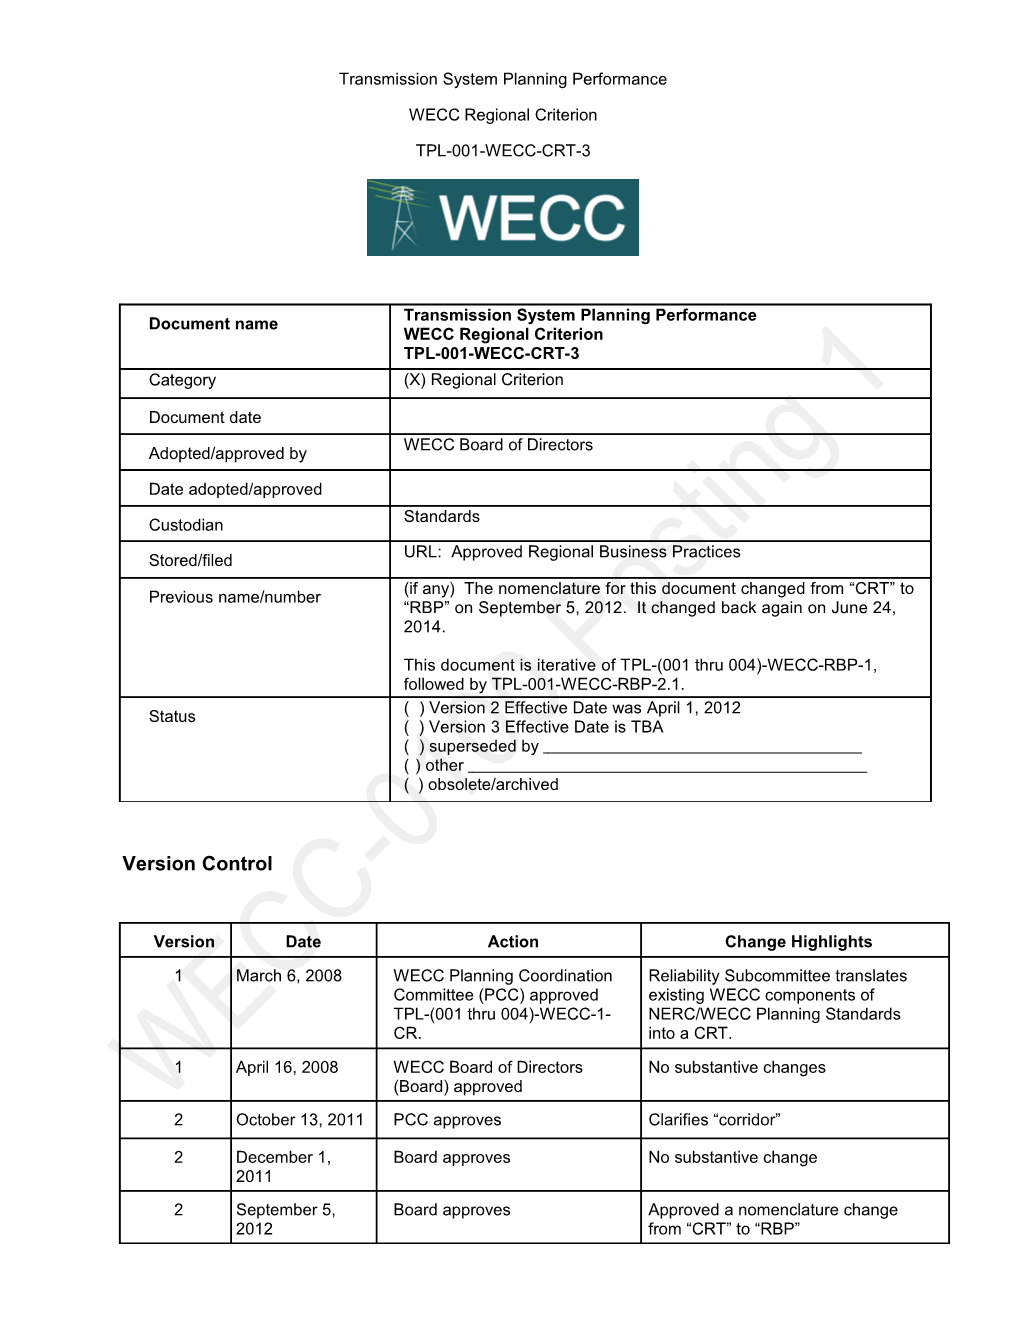 WECC-0100 Posting 1 TPL-001-WECC-CRT-3 Clean